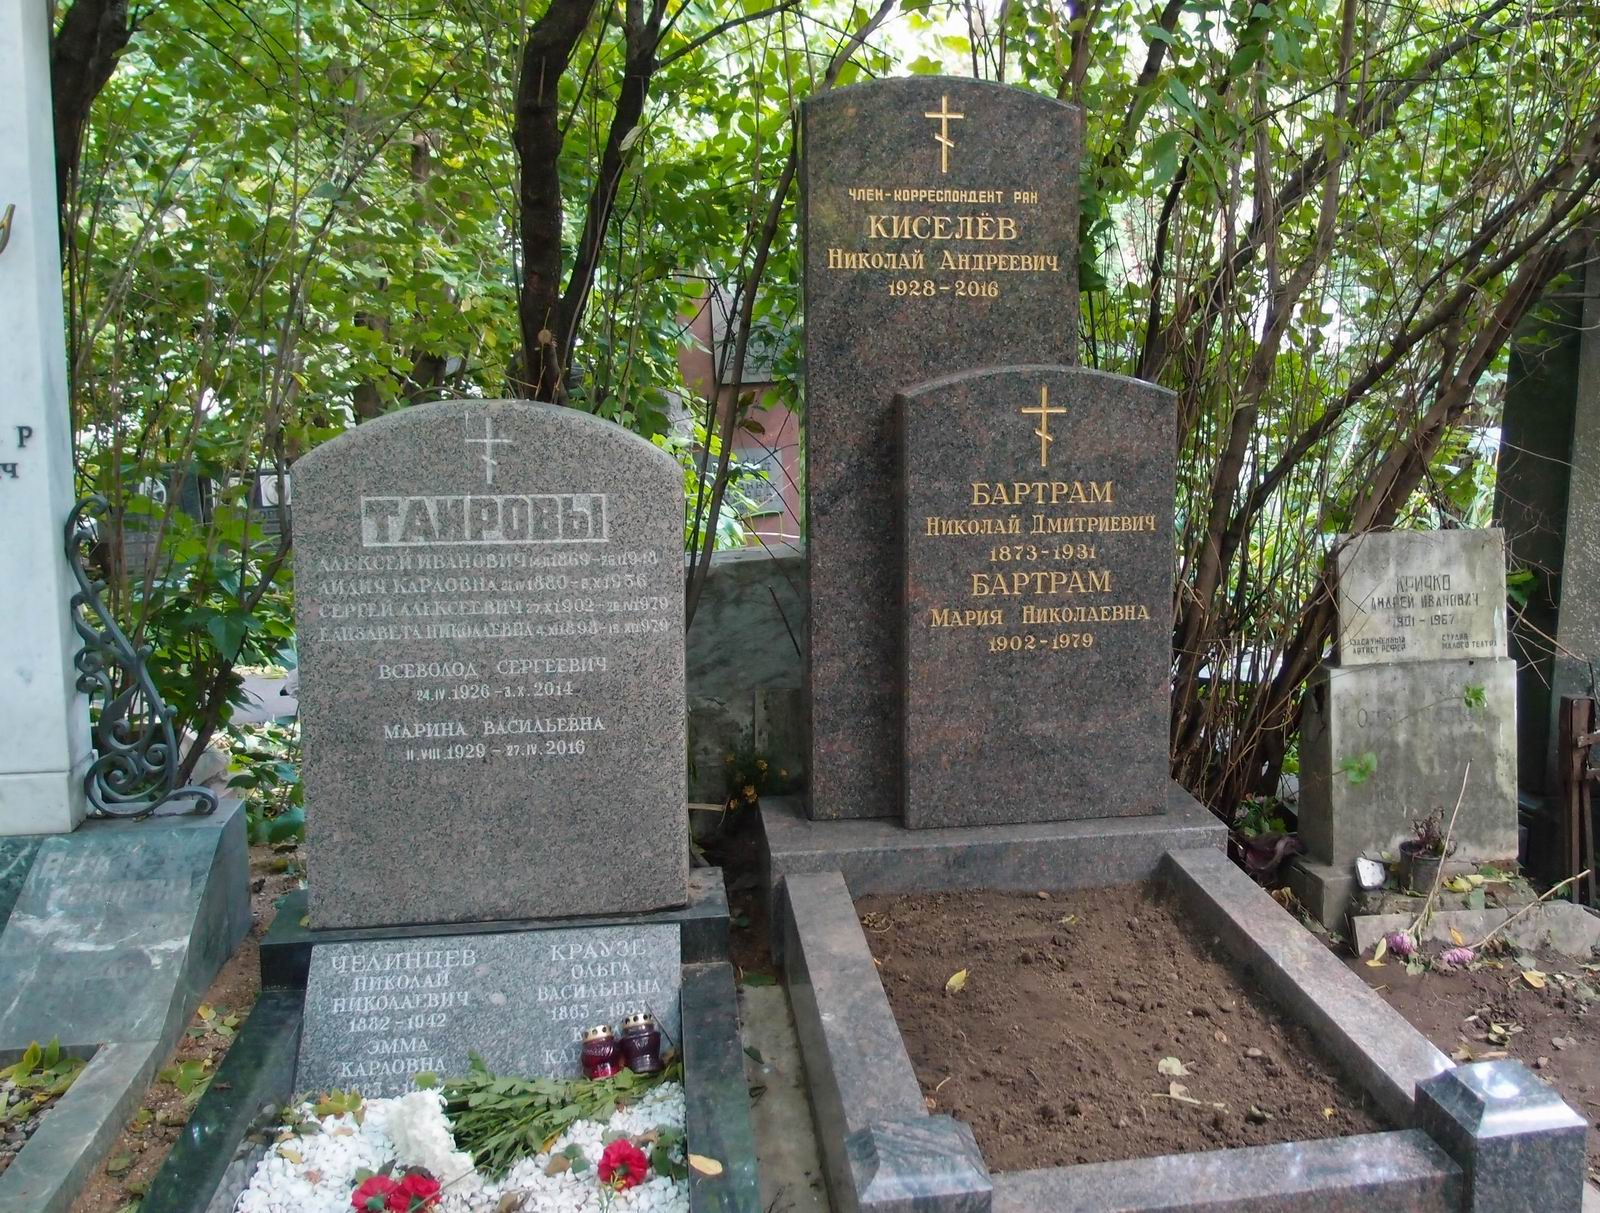 Памятник на могиле Бартрама Н.Д. (1873-1931) и Киселёва Н.А. (1928-2016), на Новодевичьем кладбище (2-7-20). Нажмите левую кнопку мыши, чтобы увидеть вариант памятника до 2016.